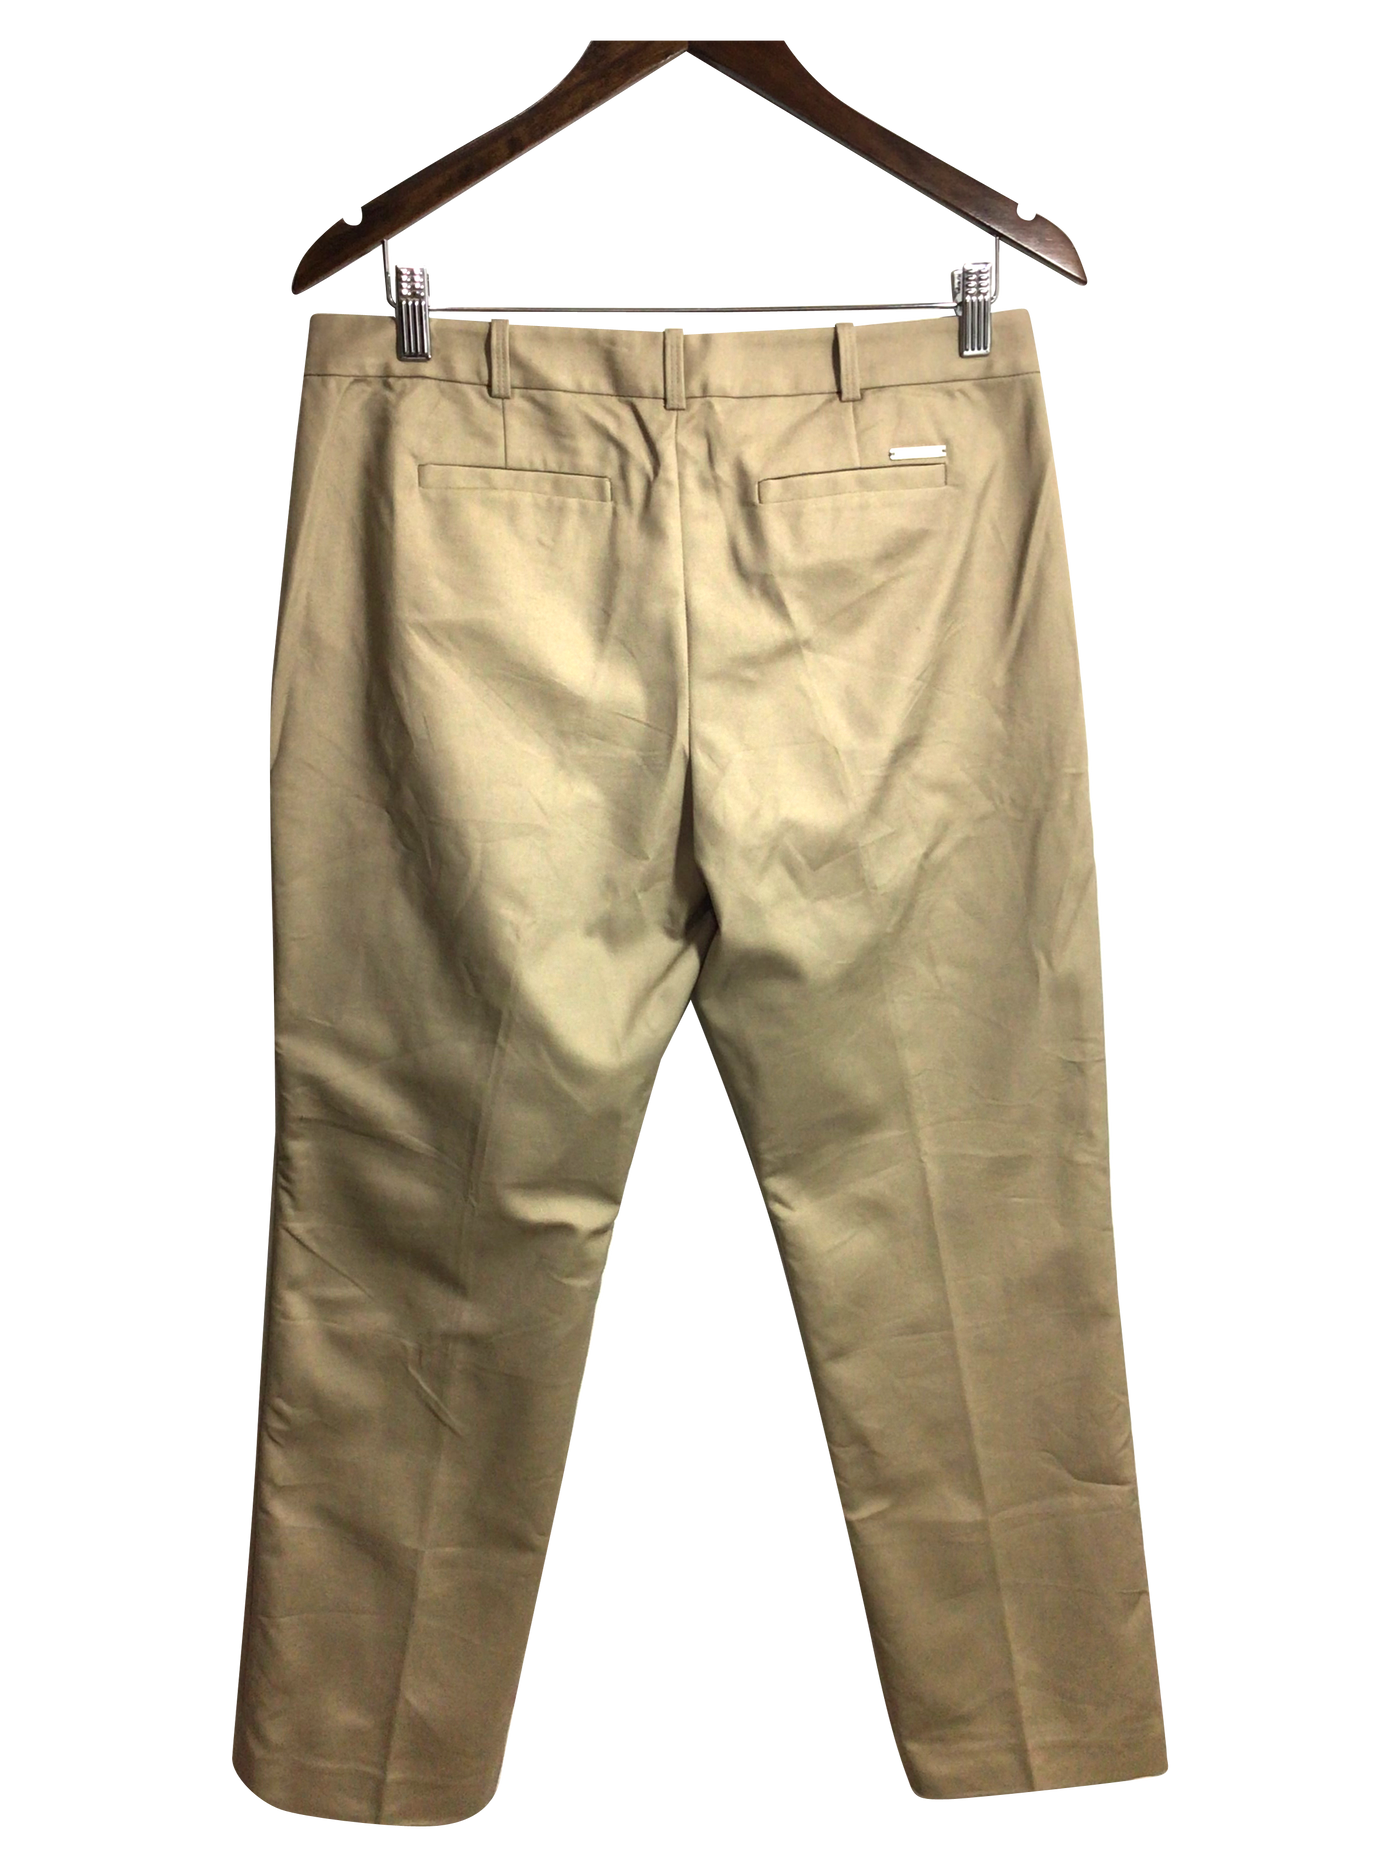 MICHAEL KORS Women Work Pants Regular fit in Beige - Size 8 | 69.95 $ KOOP